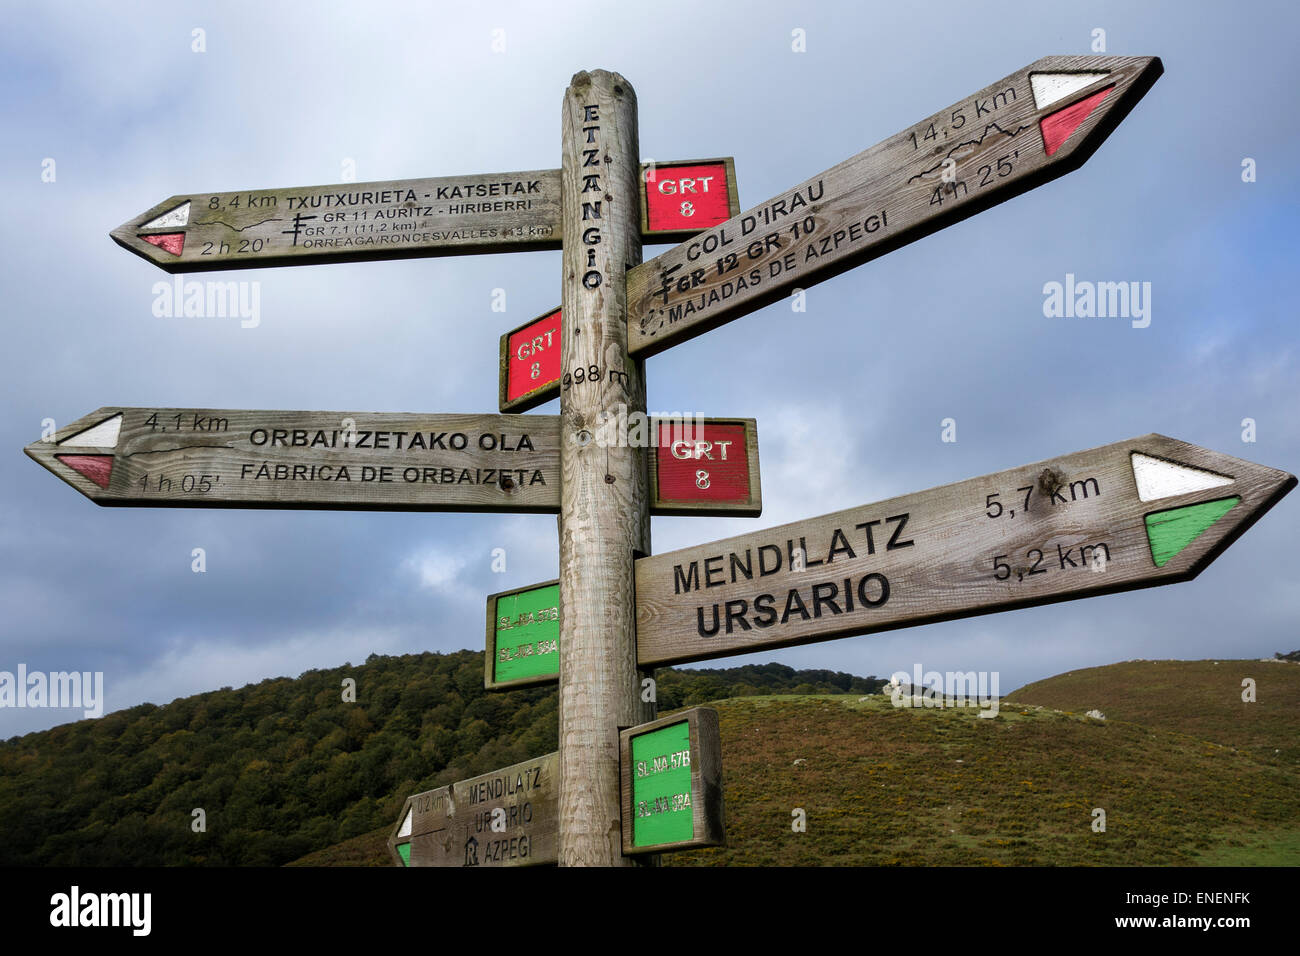 SIG-Post, trekking-Routen und Entfernungen angibt. Pyrenäen. Navarra. Spanien Stockfoto